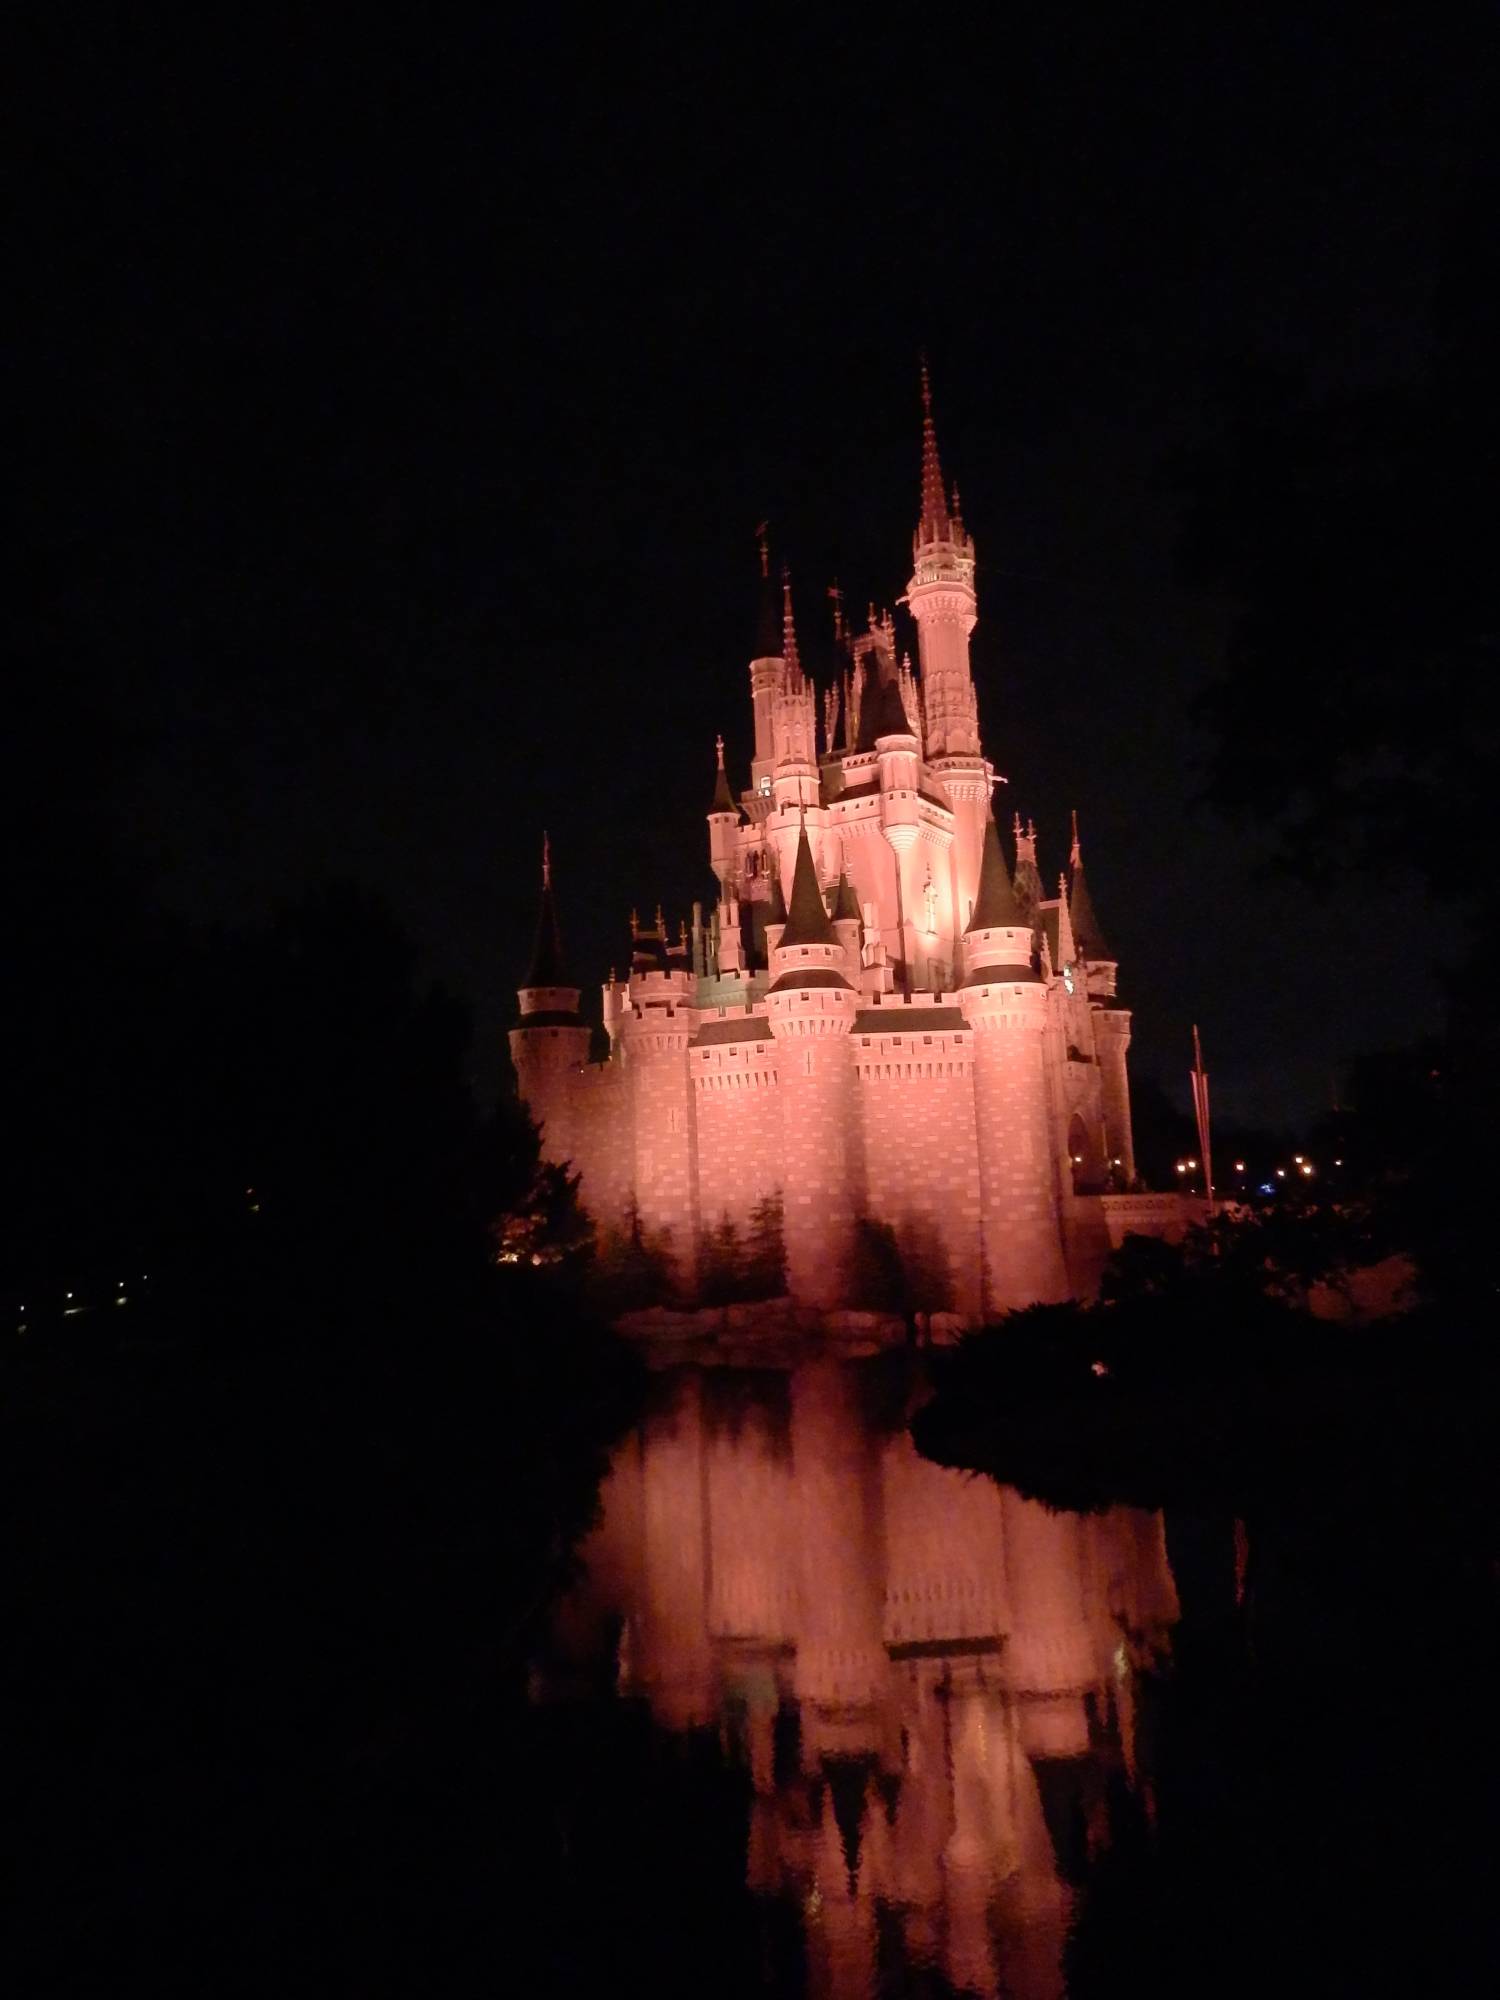 Cinderella's Castle